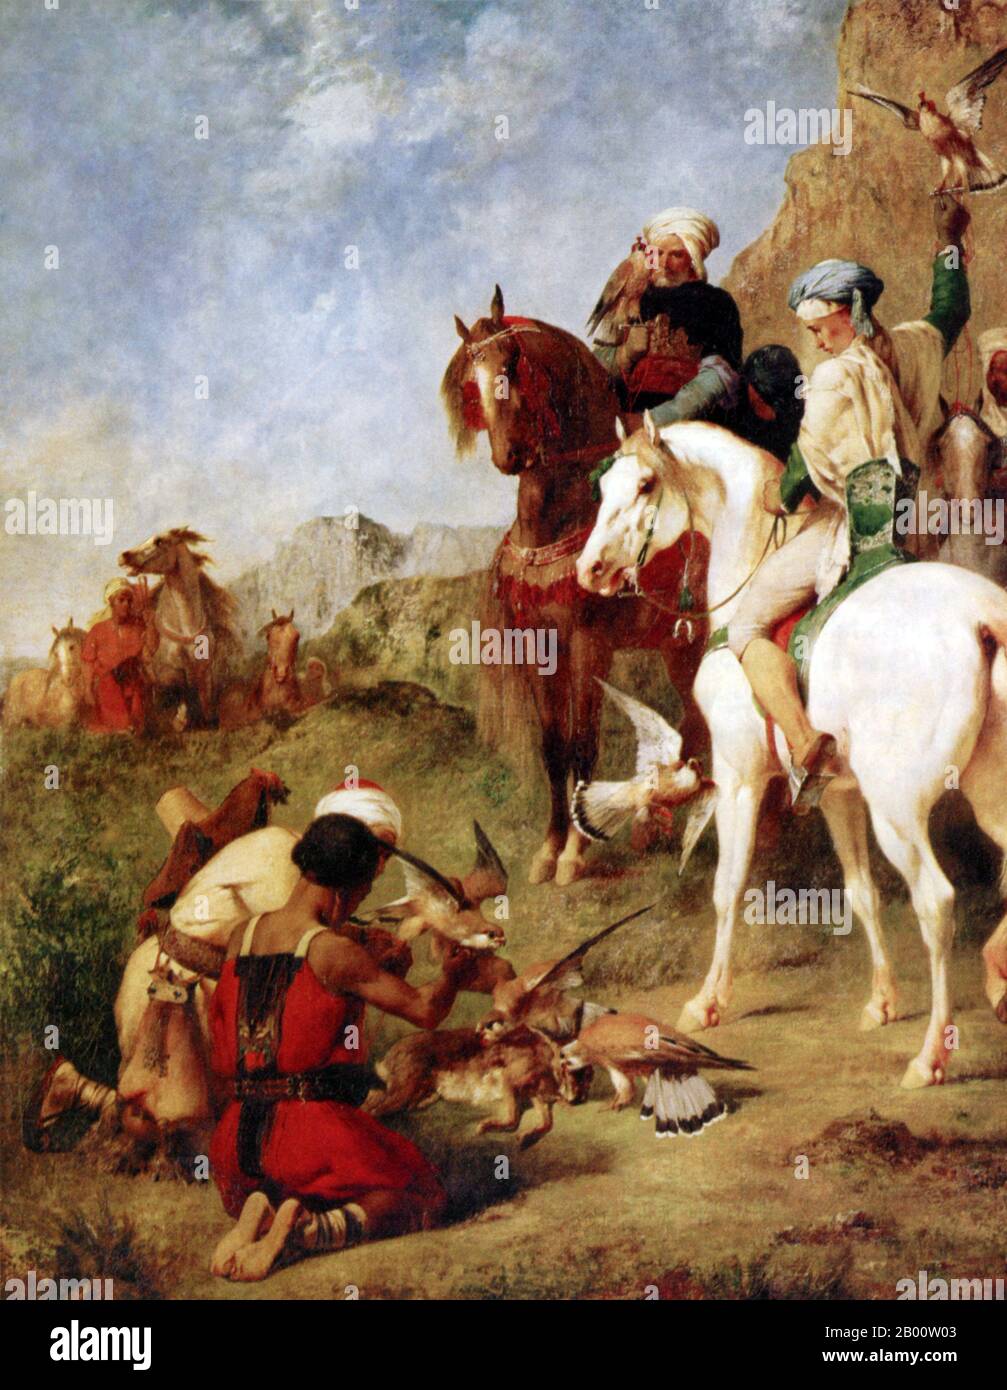 Algérie/Maghreb: «la Falconer». Peinture à l'huile sur toile par Eugene Fromentin (1820-1876), qui montre également des locaux algériens sur des chevaux Barb, 1863. Le sport de la fauconnerie a été introduit en Algérie et au Maghreb par les Arabes il y a plus de 1,000 ans et a été un passe-temps favori de la royauté et de la noblesse. Au cours de la période d’expansion arabe en Afrique du Nord, la cavalerie était souvent montée sur de petits chevaux agiles appelés «berbères», ou «barbes». Banque D'Images